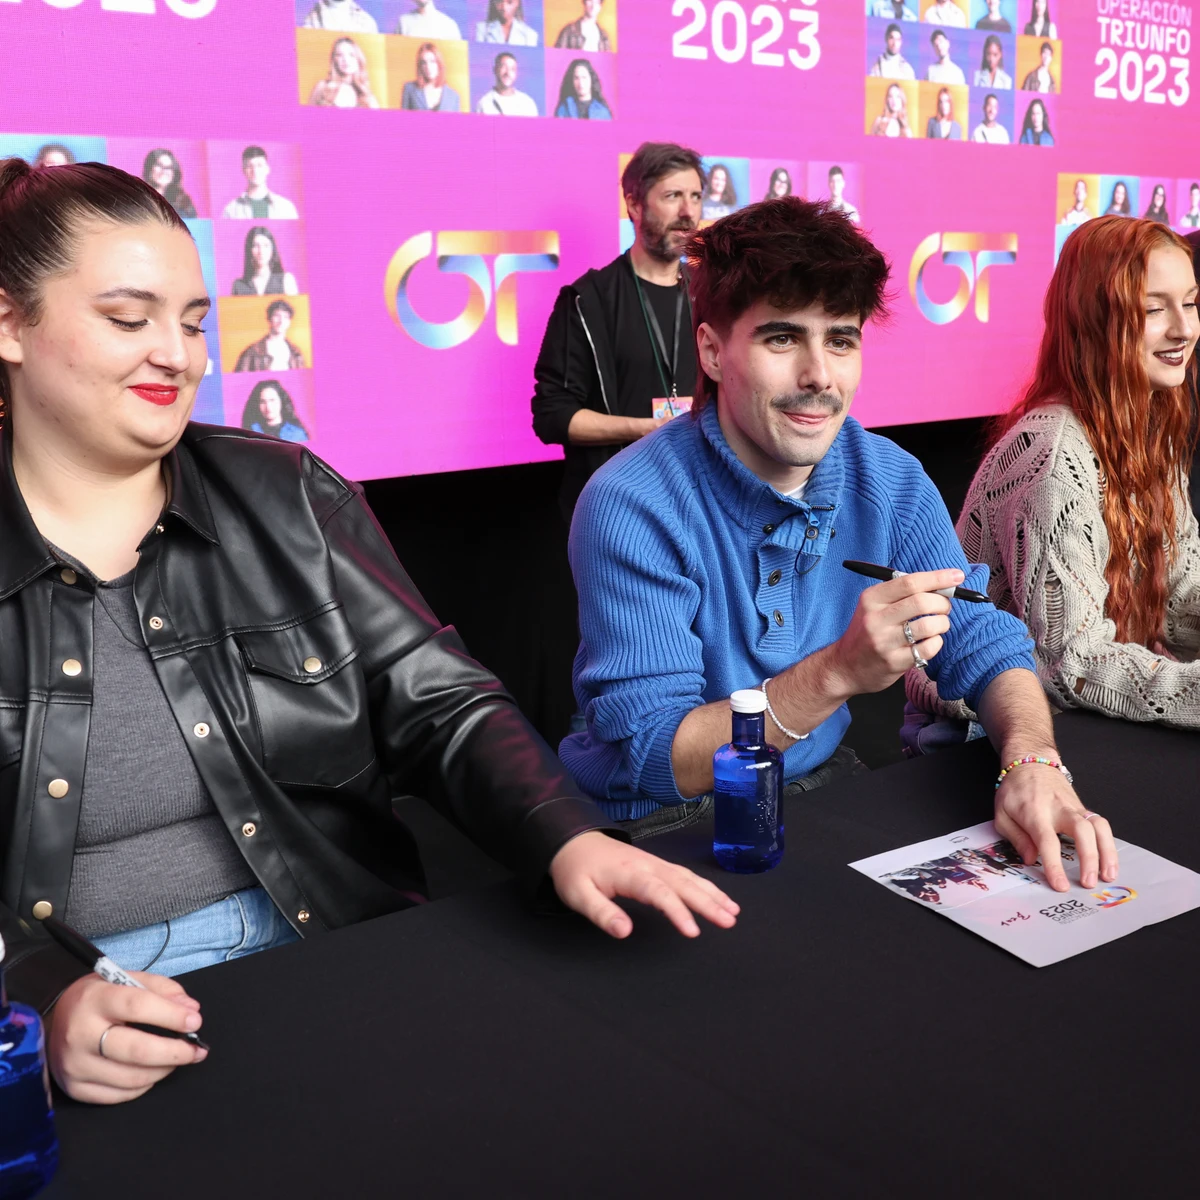 Denna y Violeta en Granada: 'OT 2023' anuncia nuevas firmas de discos con  parada en la